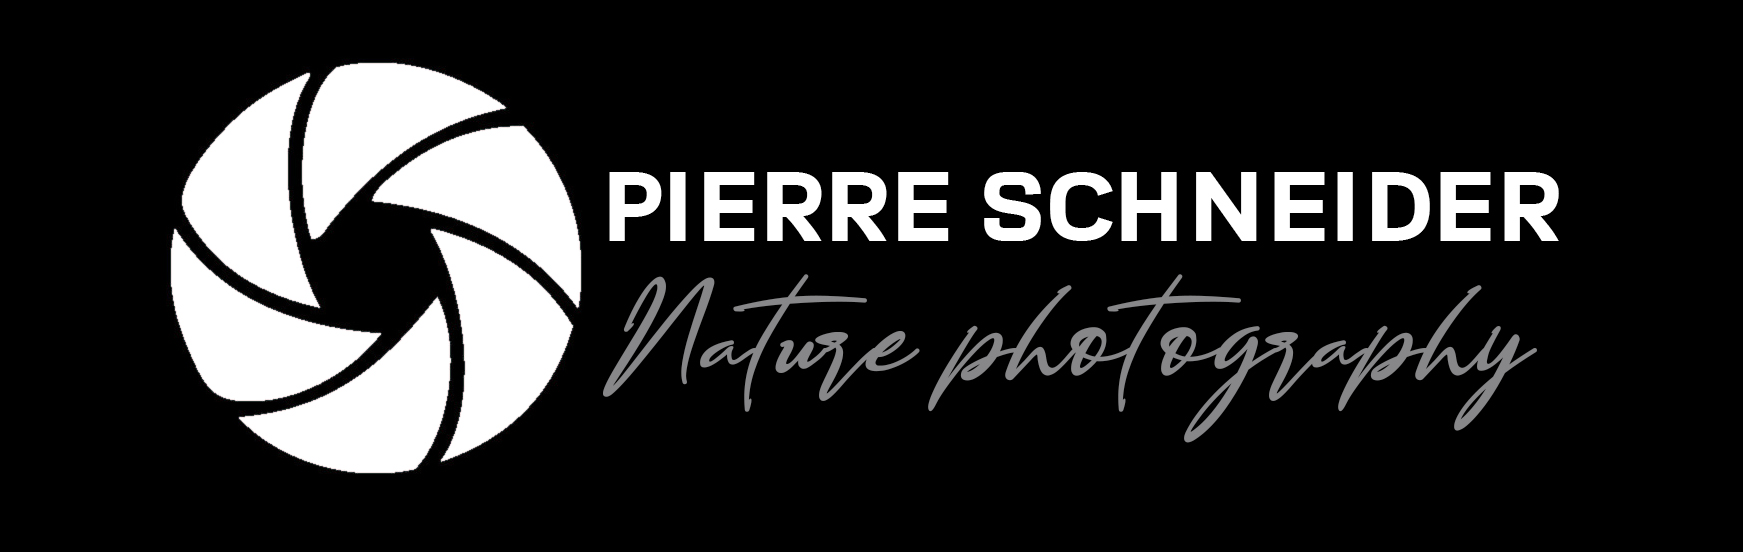 Pierre Schneider Photographies